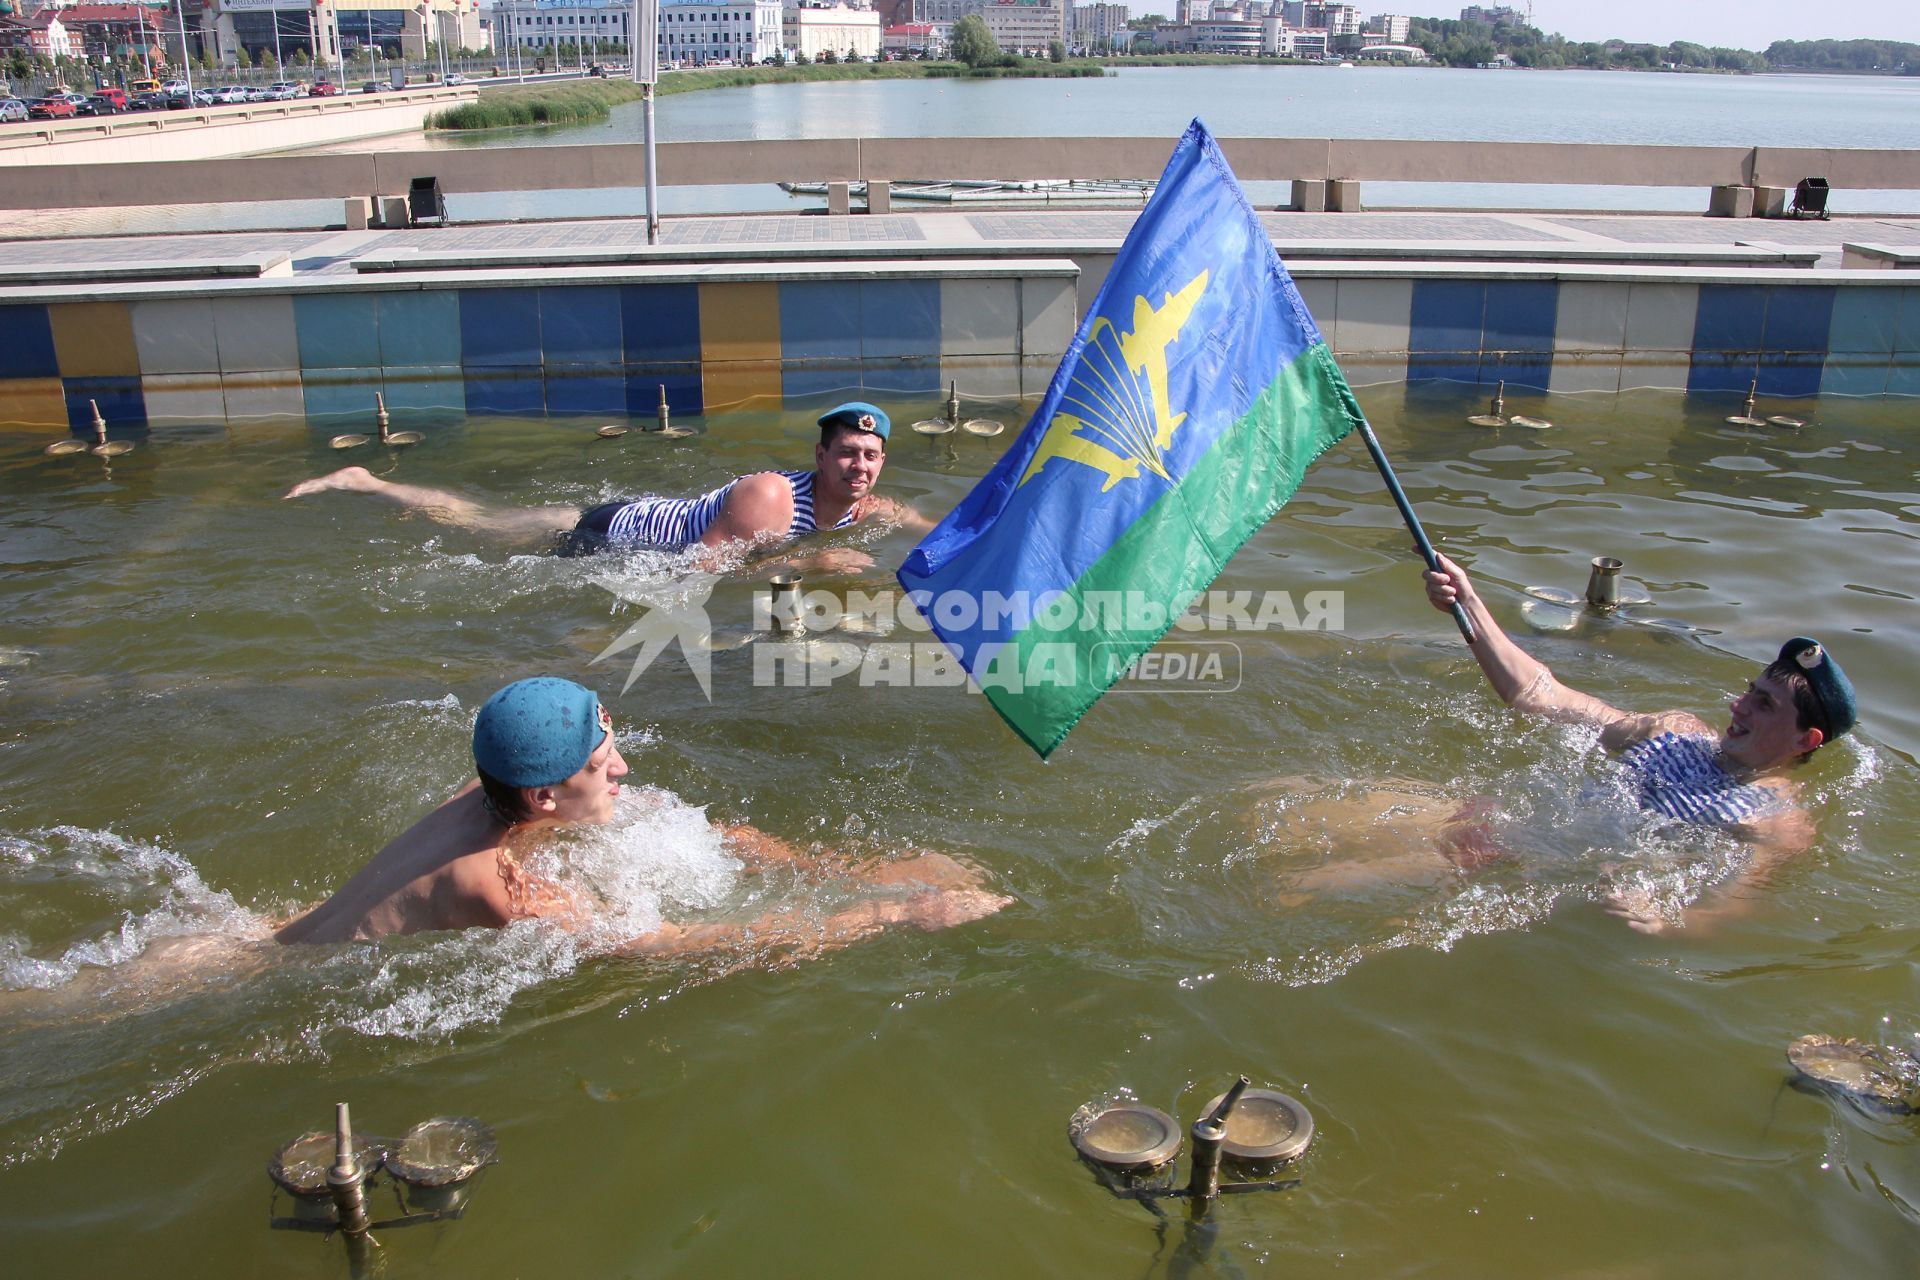 Празднование дня ВДВ в Казани. На снимке: Десантник с флагом воздушно-десантных войск плывет в фонтане рядом плывут сослуживцы.